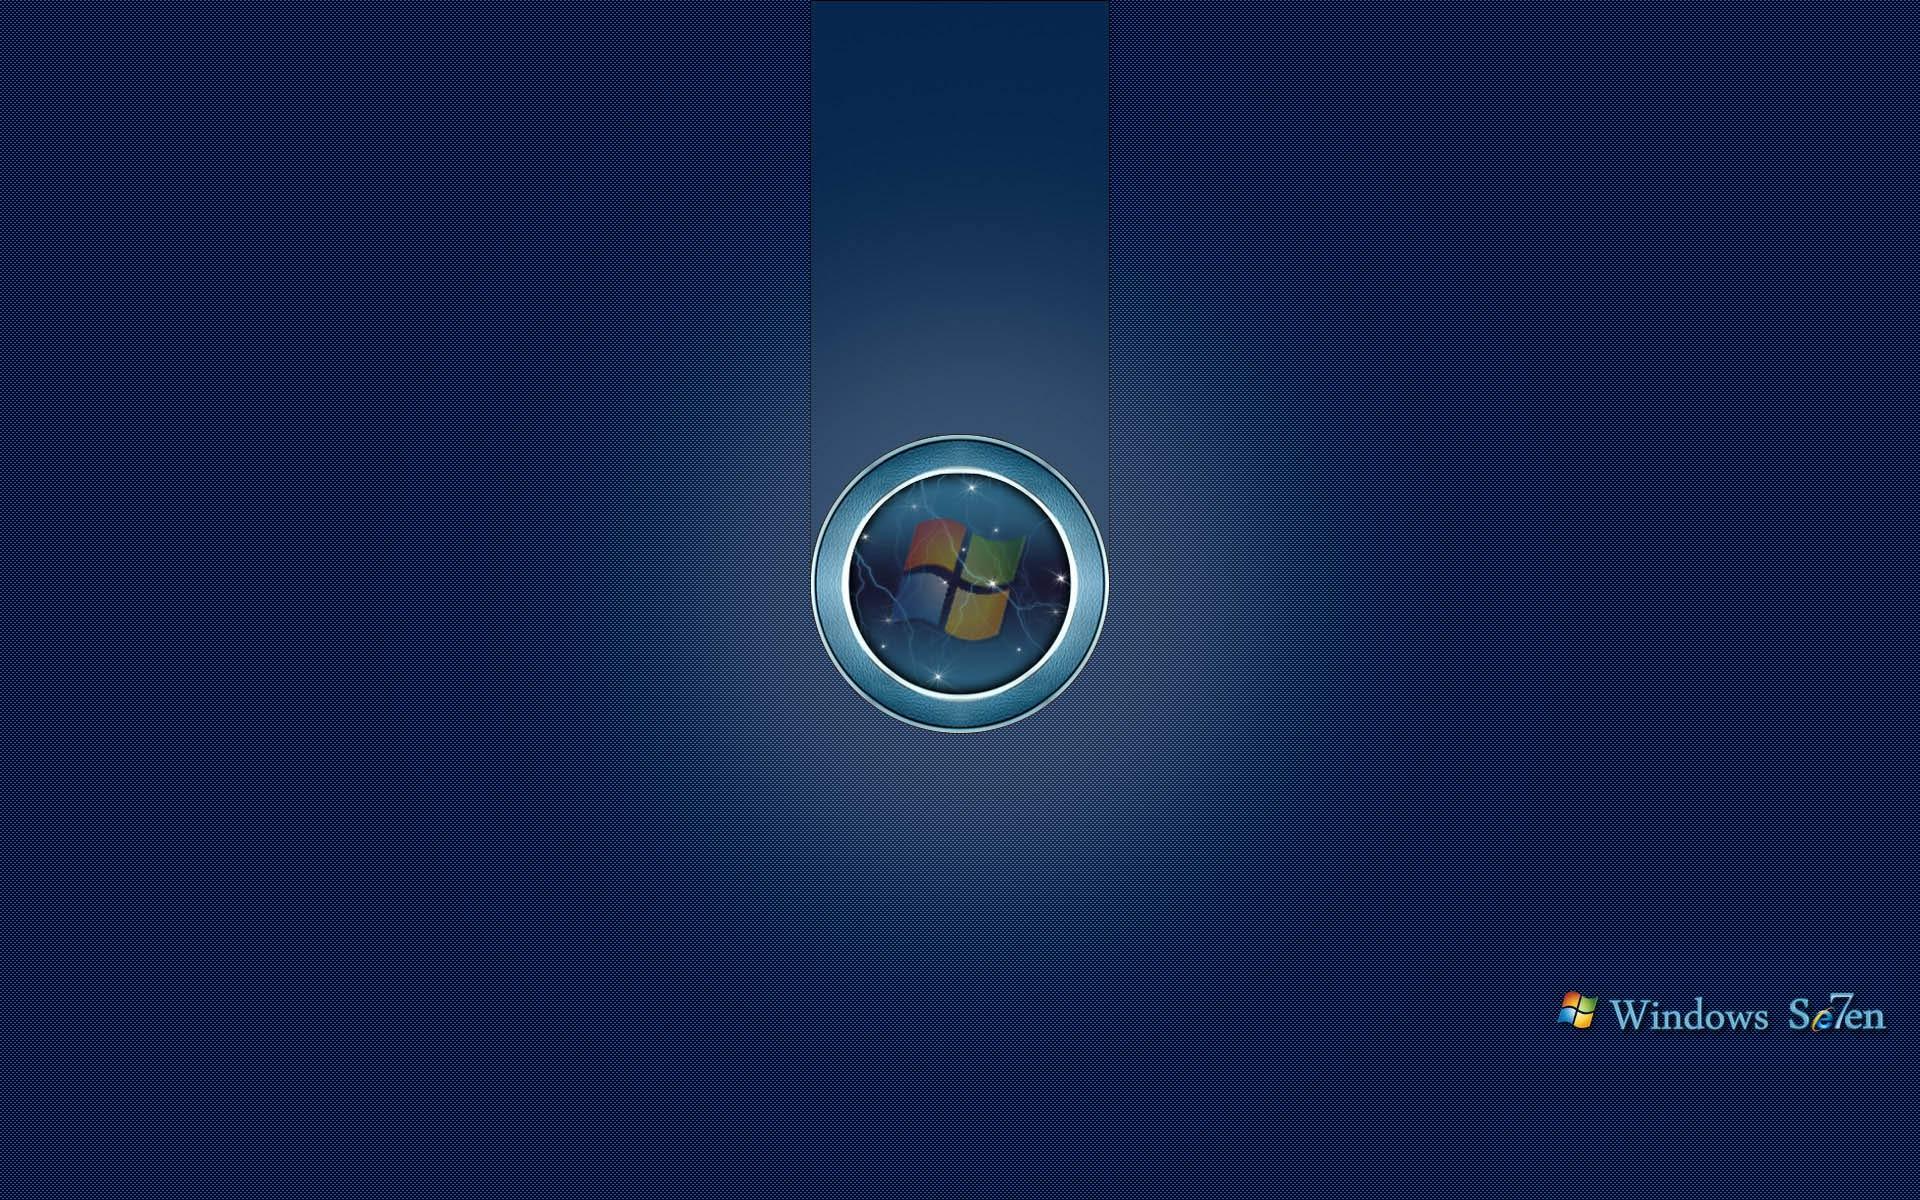 Started Windows 7 Desktop HD Wallpaper. High Quality Wallpaper